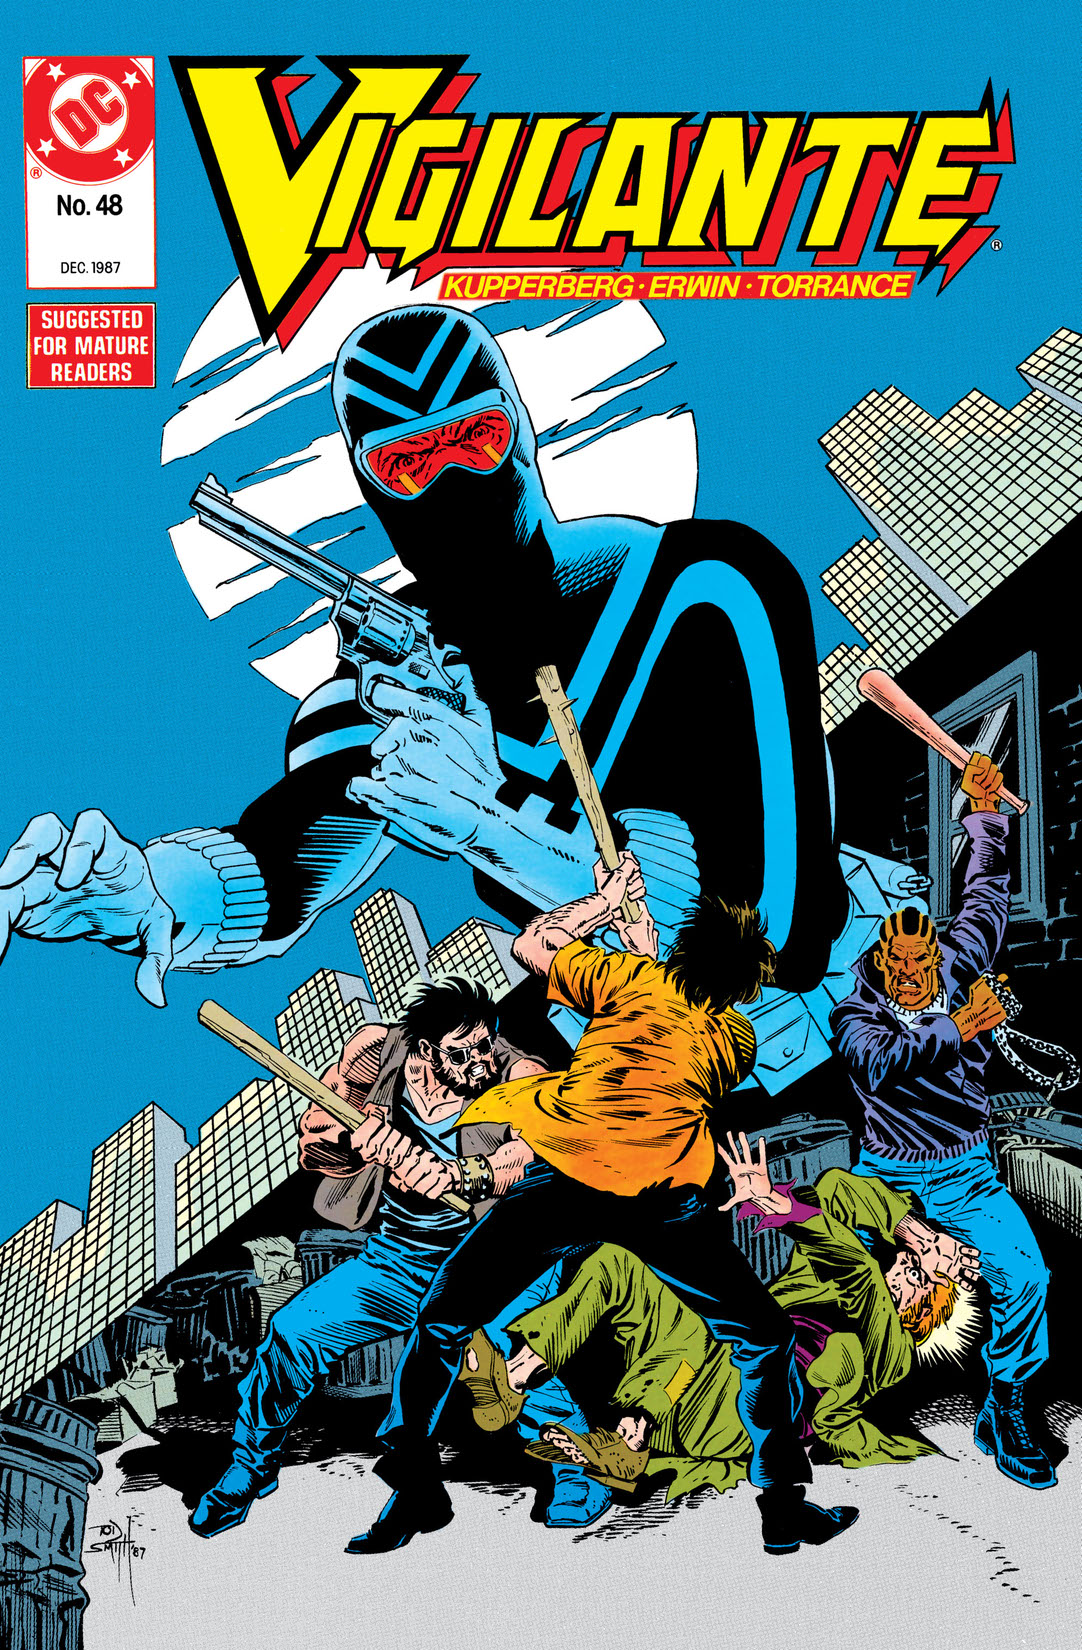 The Vigilante #48 preview images